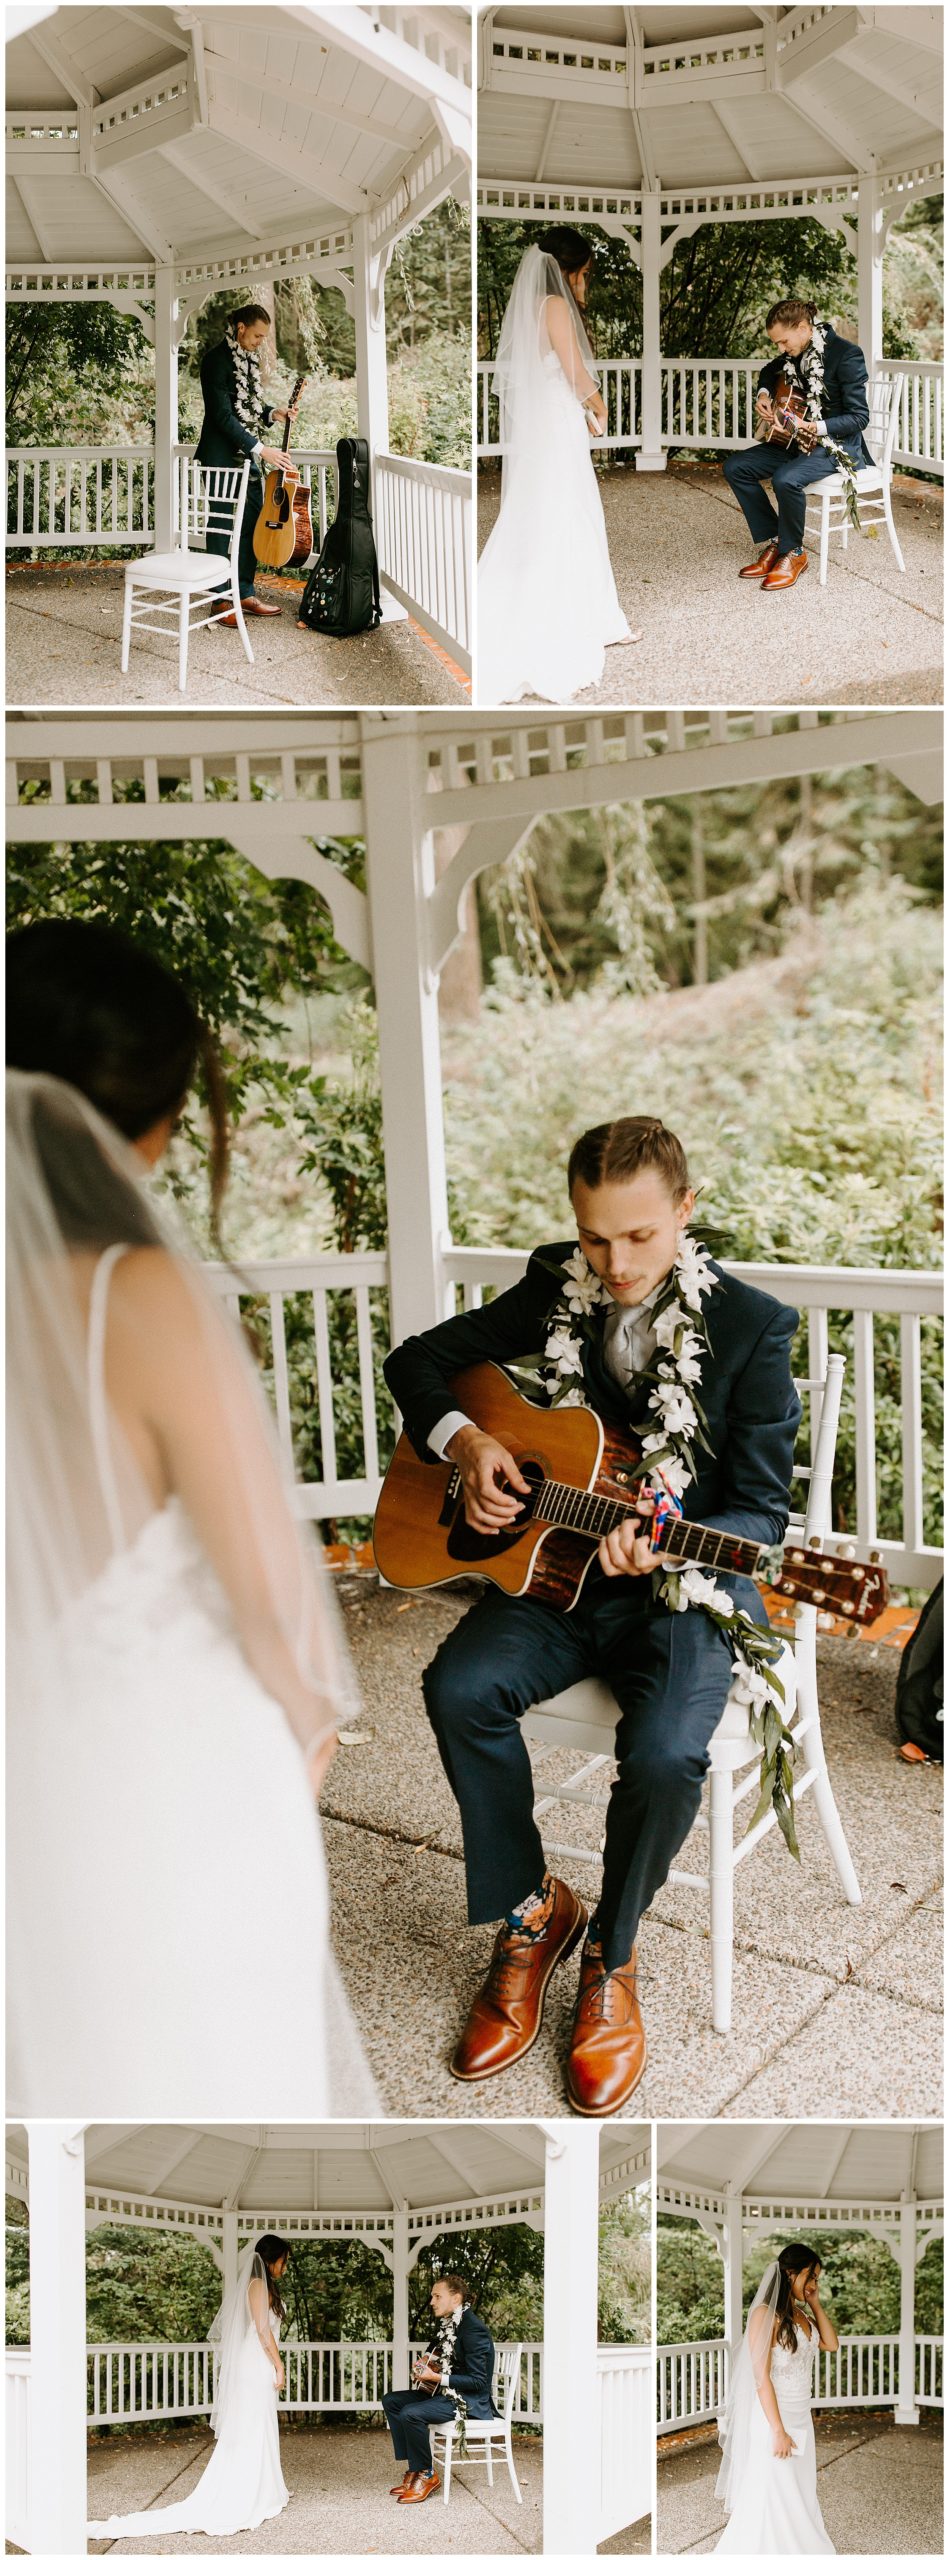 groom serenading bride, groom playing guitar for bride